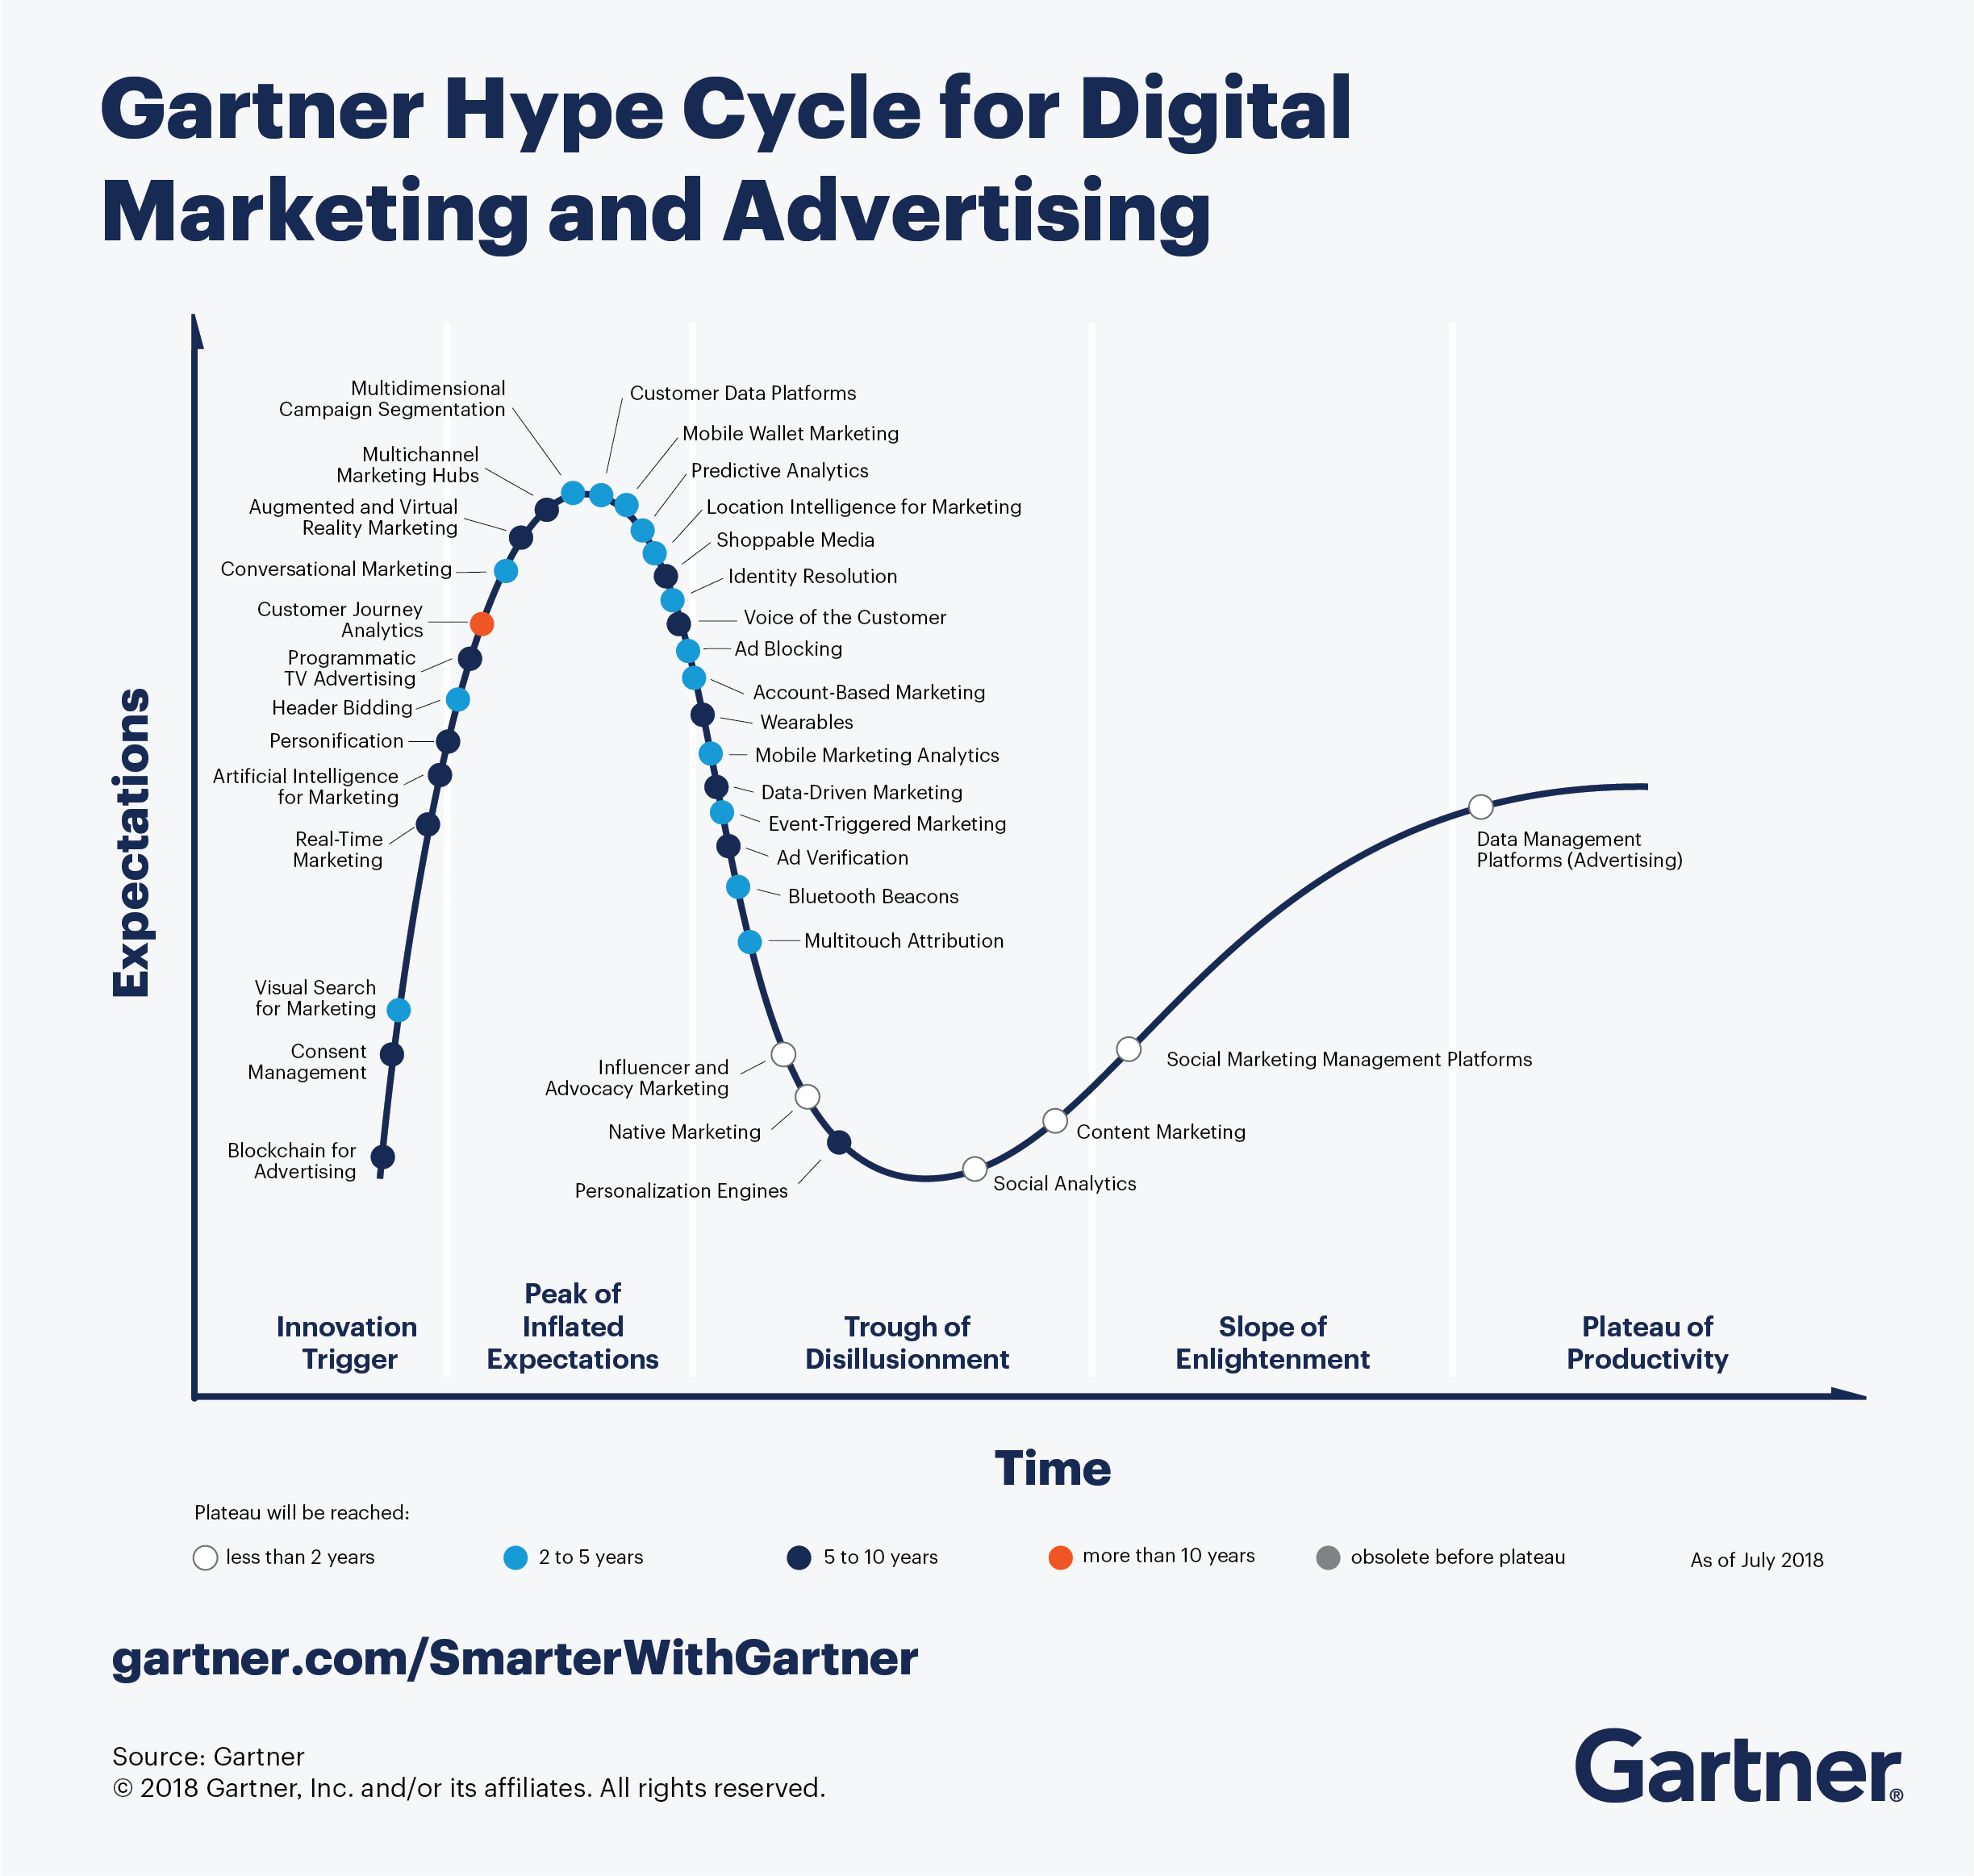 Le Hype Cycle de Gartner pour le Digital Marketing et l'Advertising